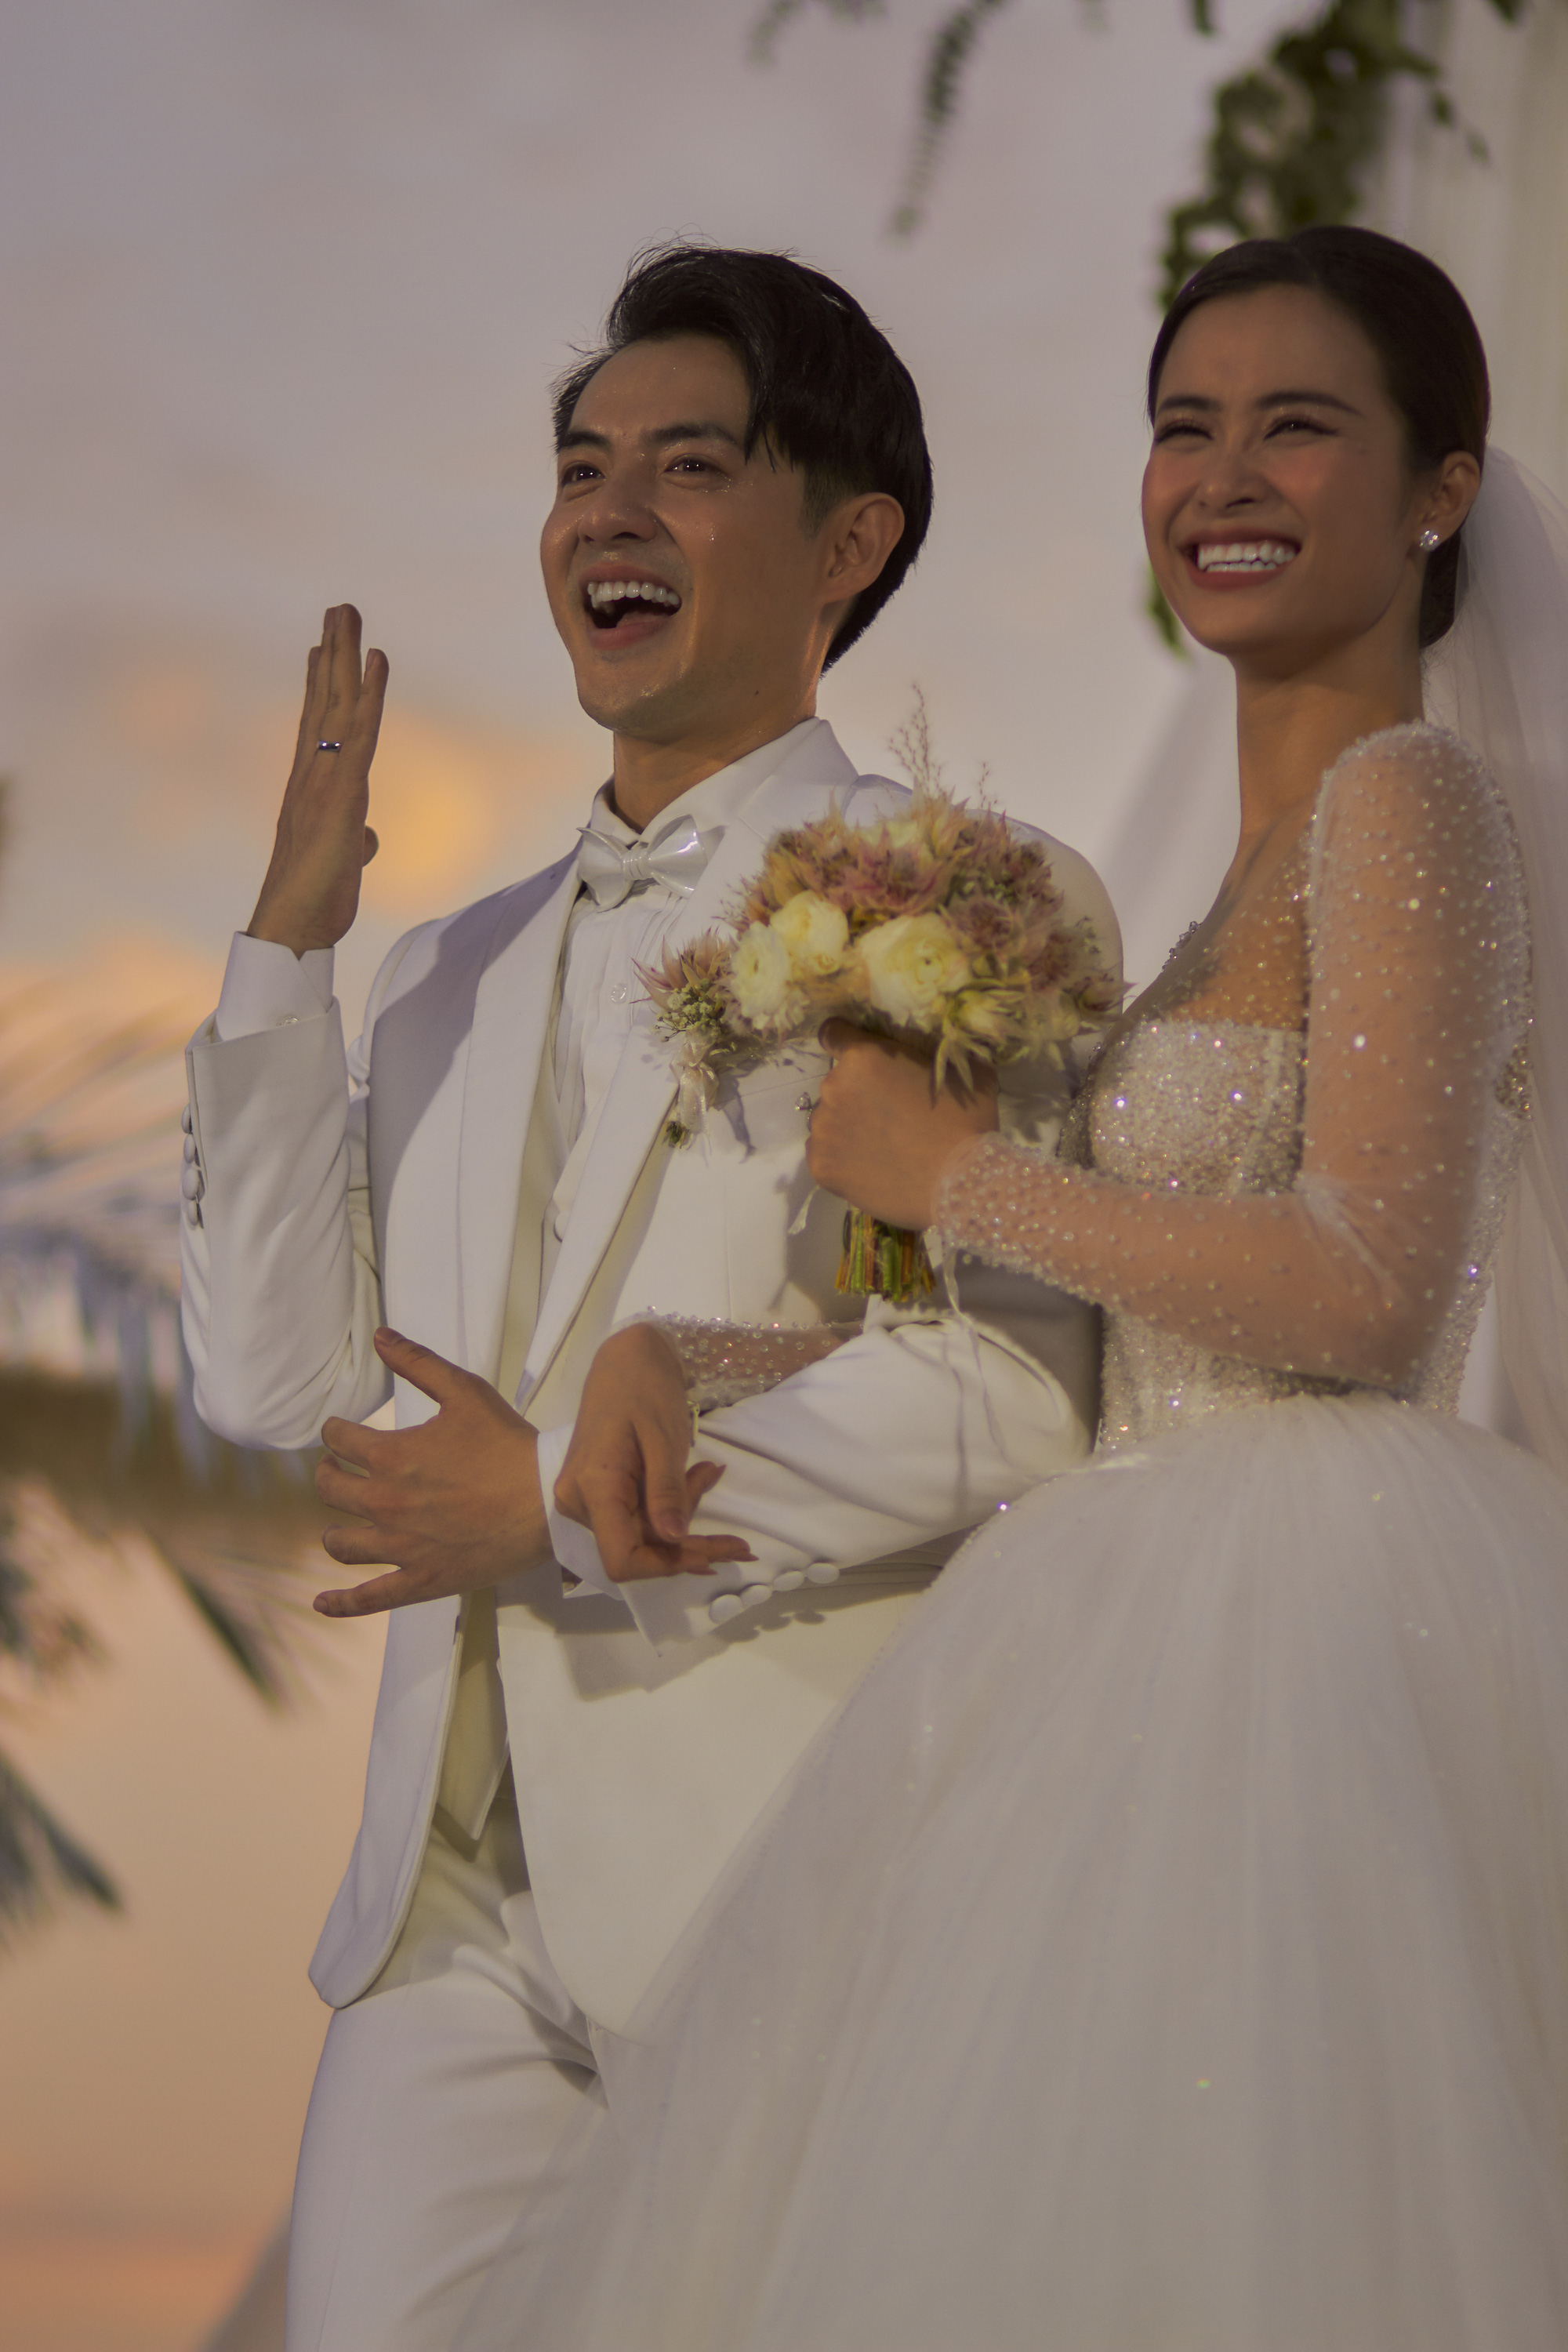 13 năm yêu và cưới của Đông Nhi và Ông Cao Thắng: Hạnh phúc viên mãn khiến ai cũng ngưỡng mộ!